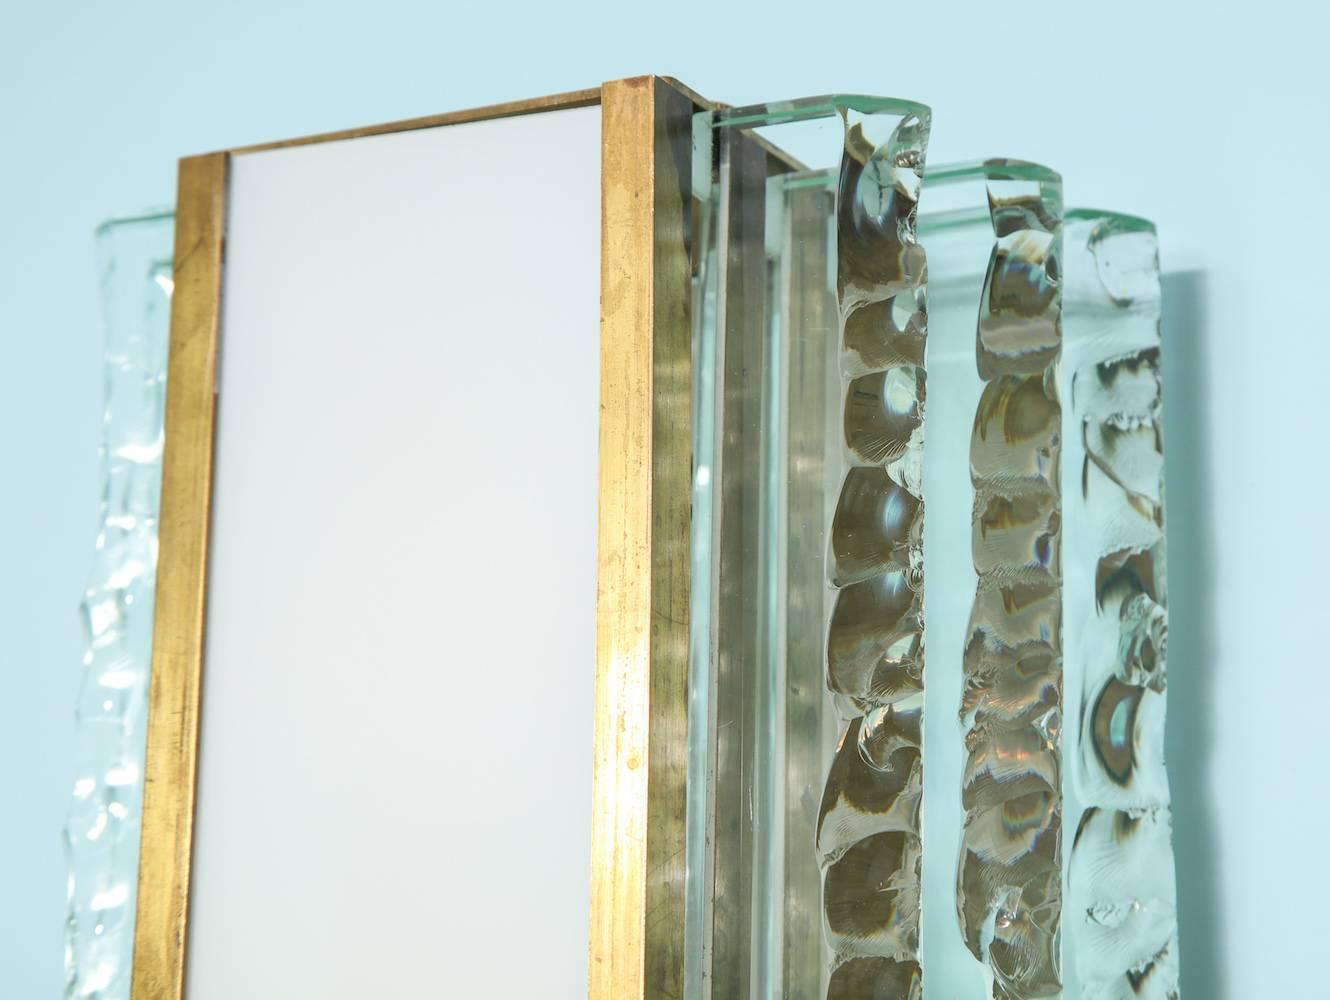 Paire d'appliques #2439 par Max Ingrand pour Fontana Arte.
Des plaques épaisses de cristal avec des bords ciselés. Façades en verre blanc et structures en laiton. Chaque applique dispose de trois douilles de type candélabre.